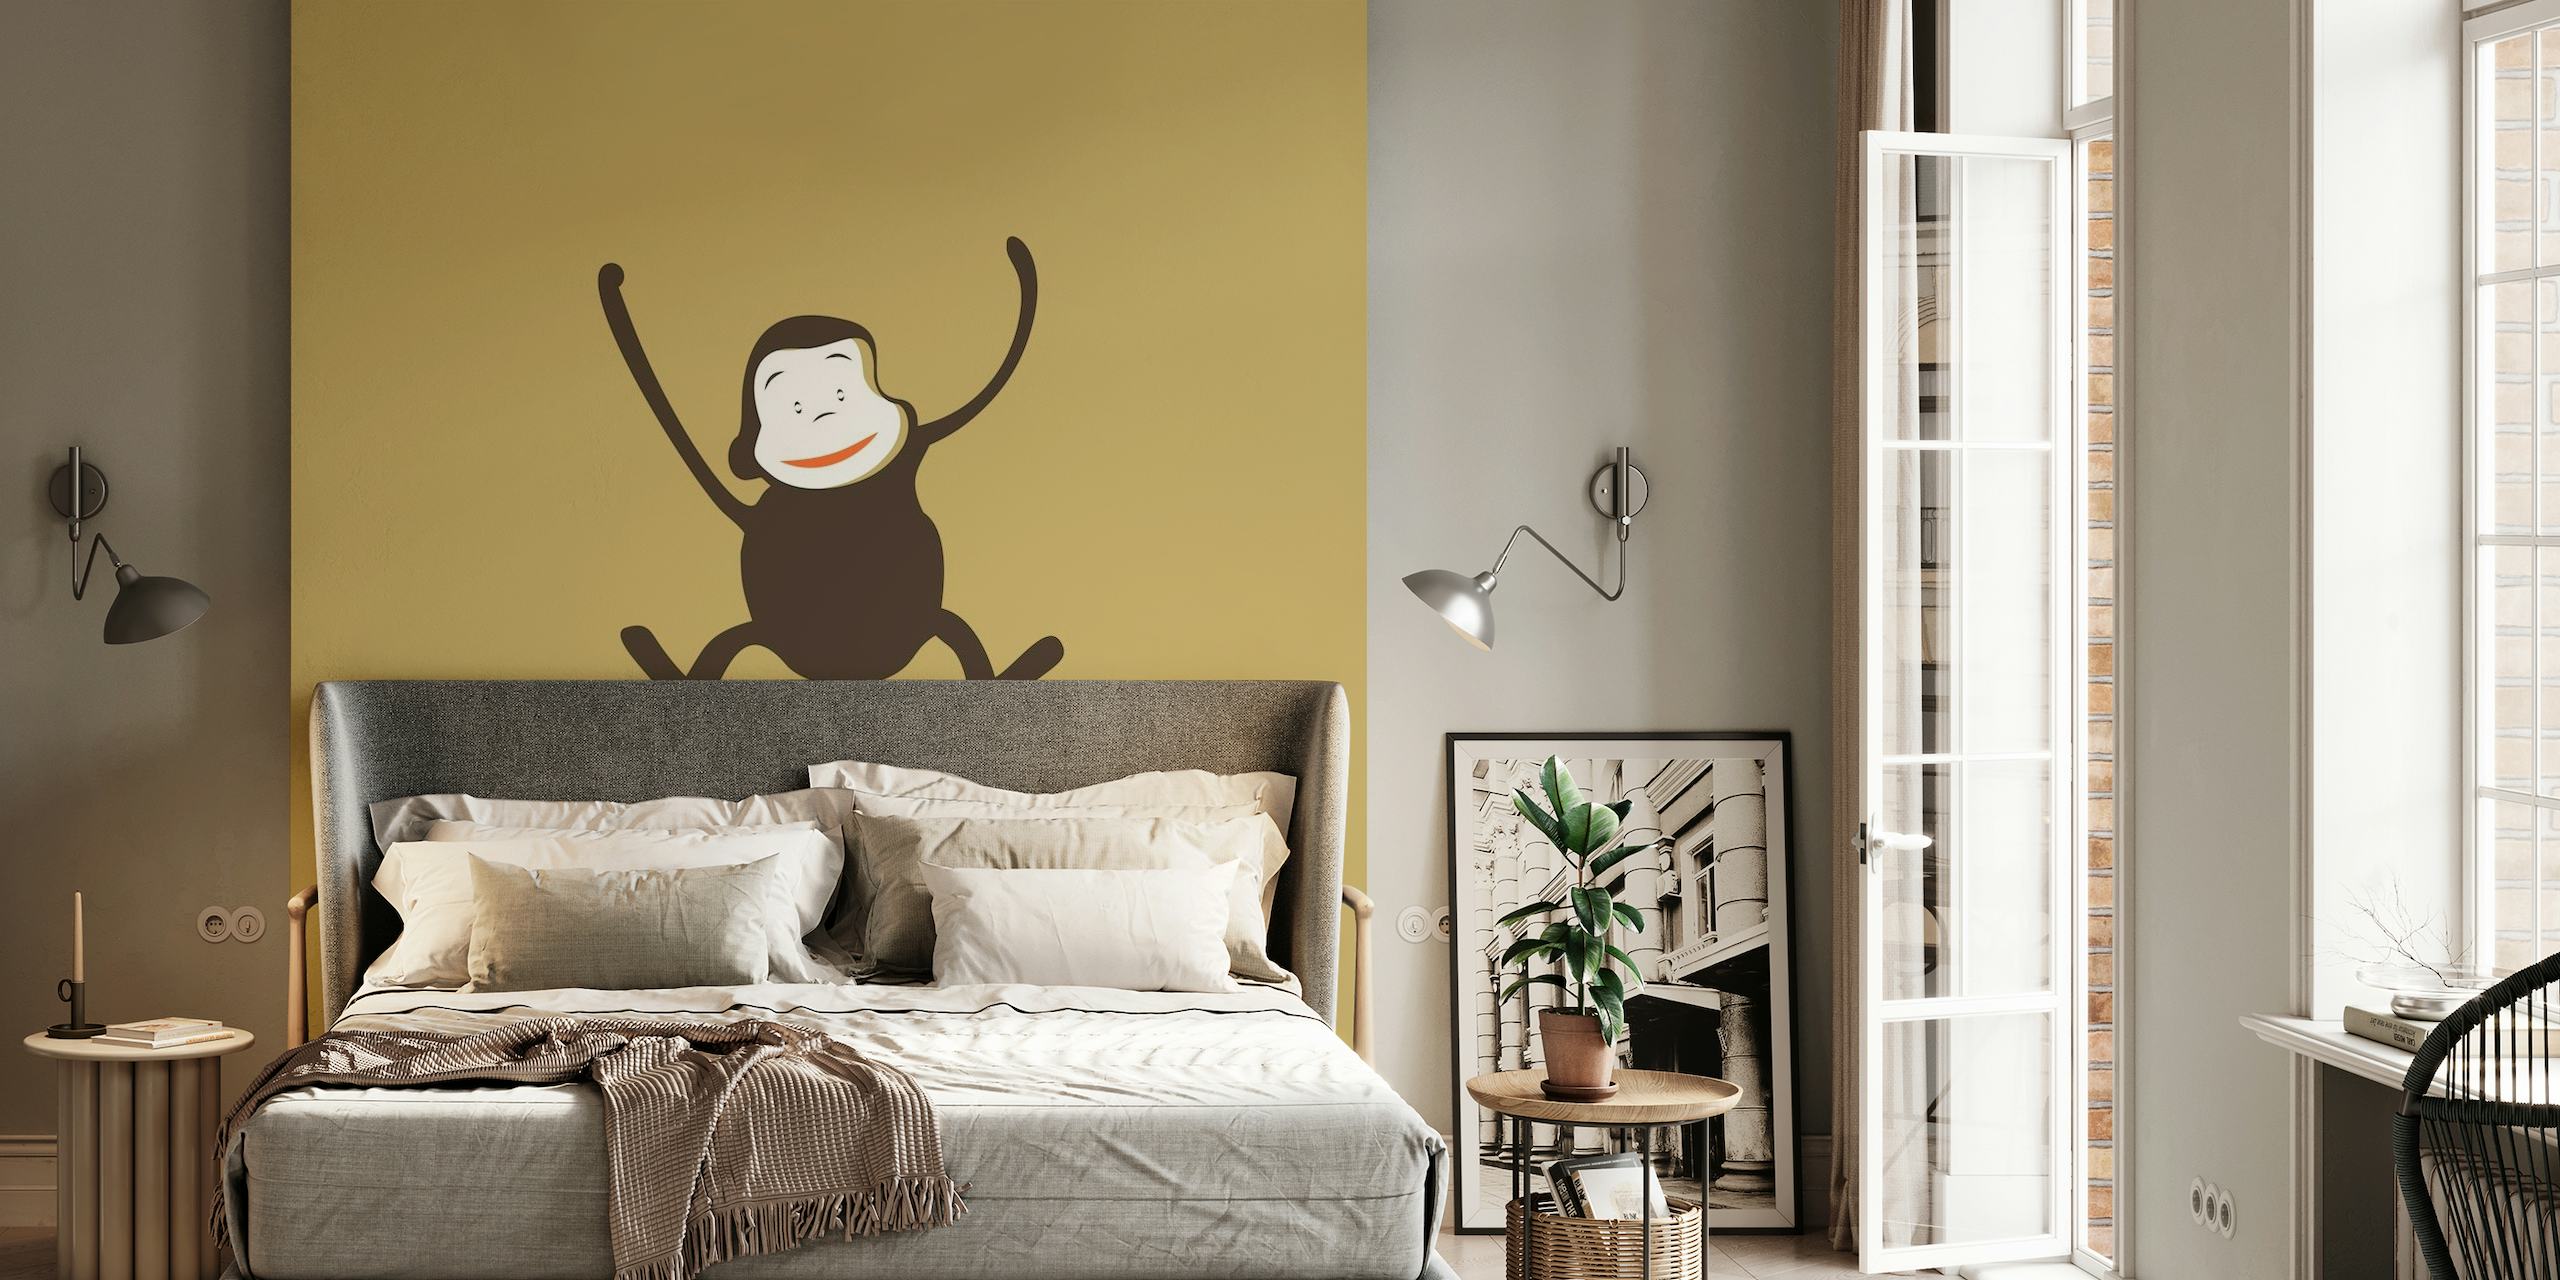 Illustrazione di una scimmia giocosa su uno sfondo murale marrone moka